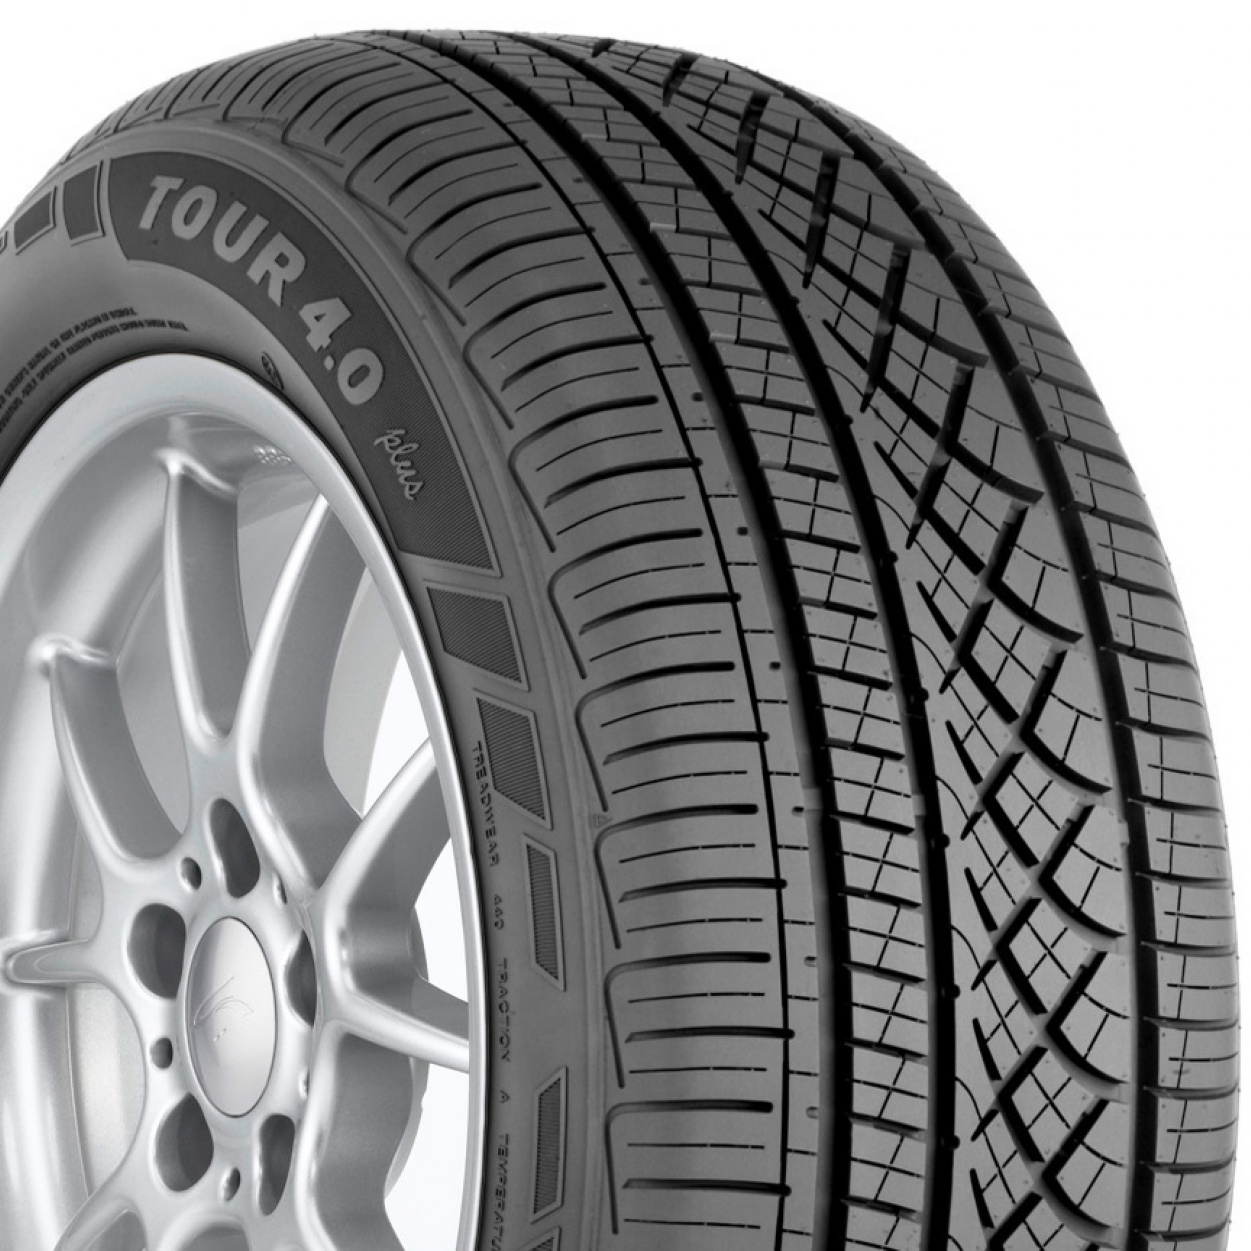 hercules-tires-tour-4-0-plus-ds-performance-automotive-accessories